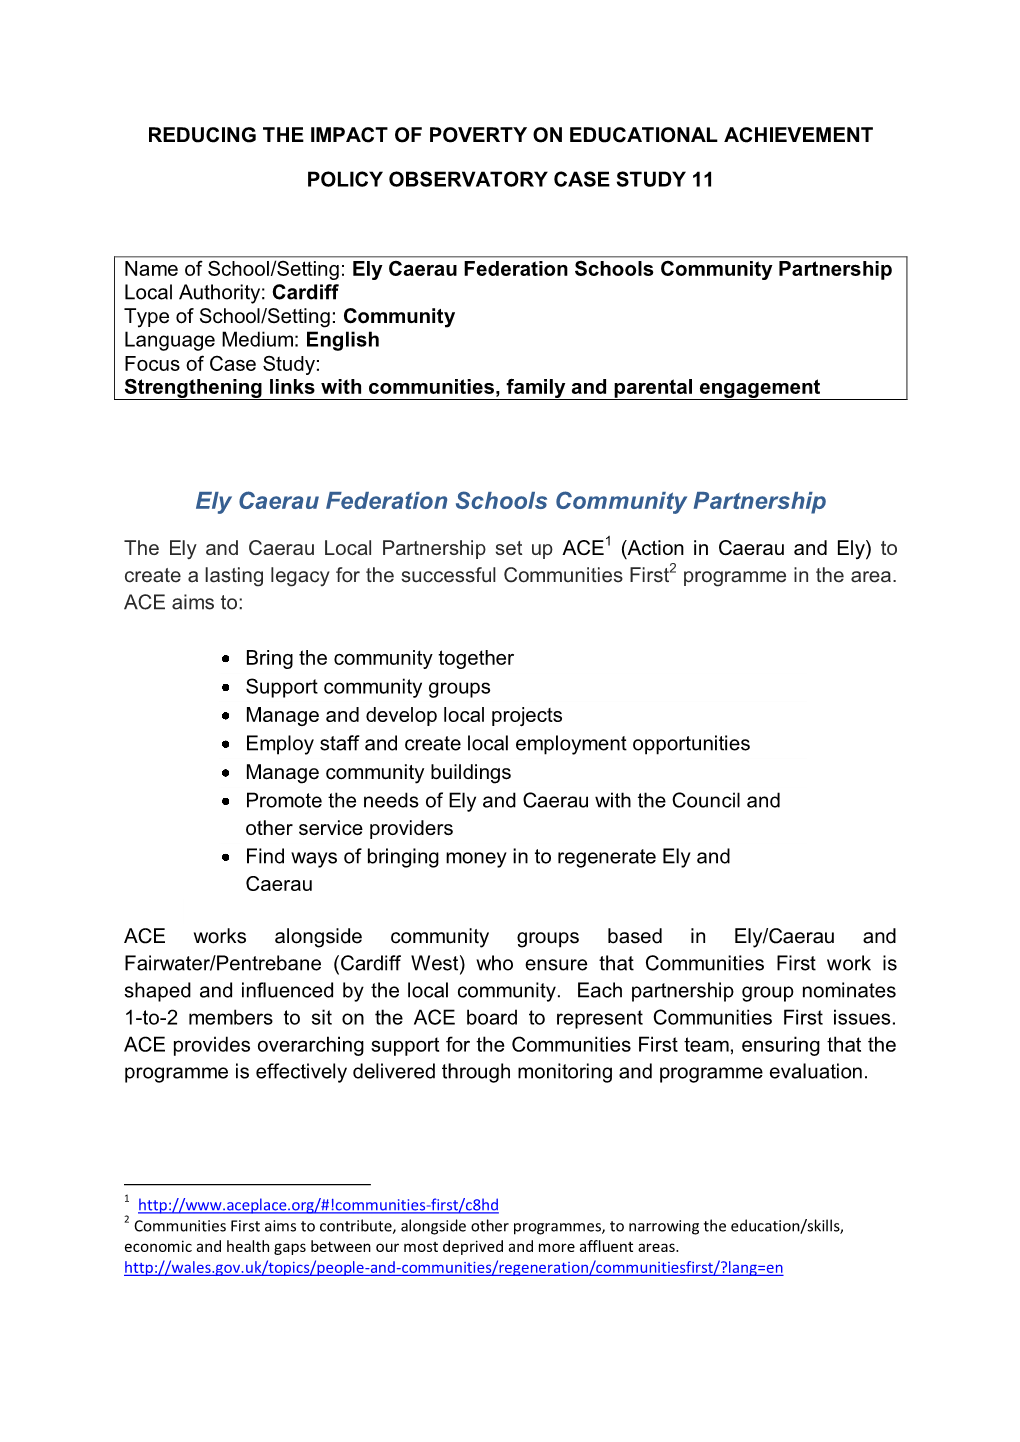 Ely Caerau Federation Schools Community Partnership